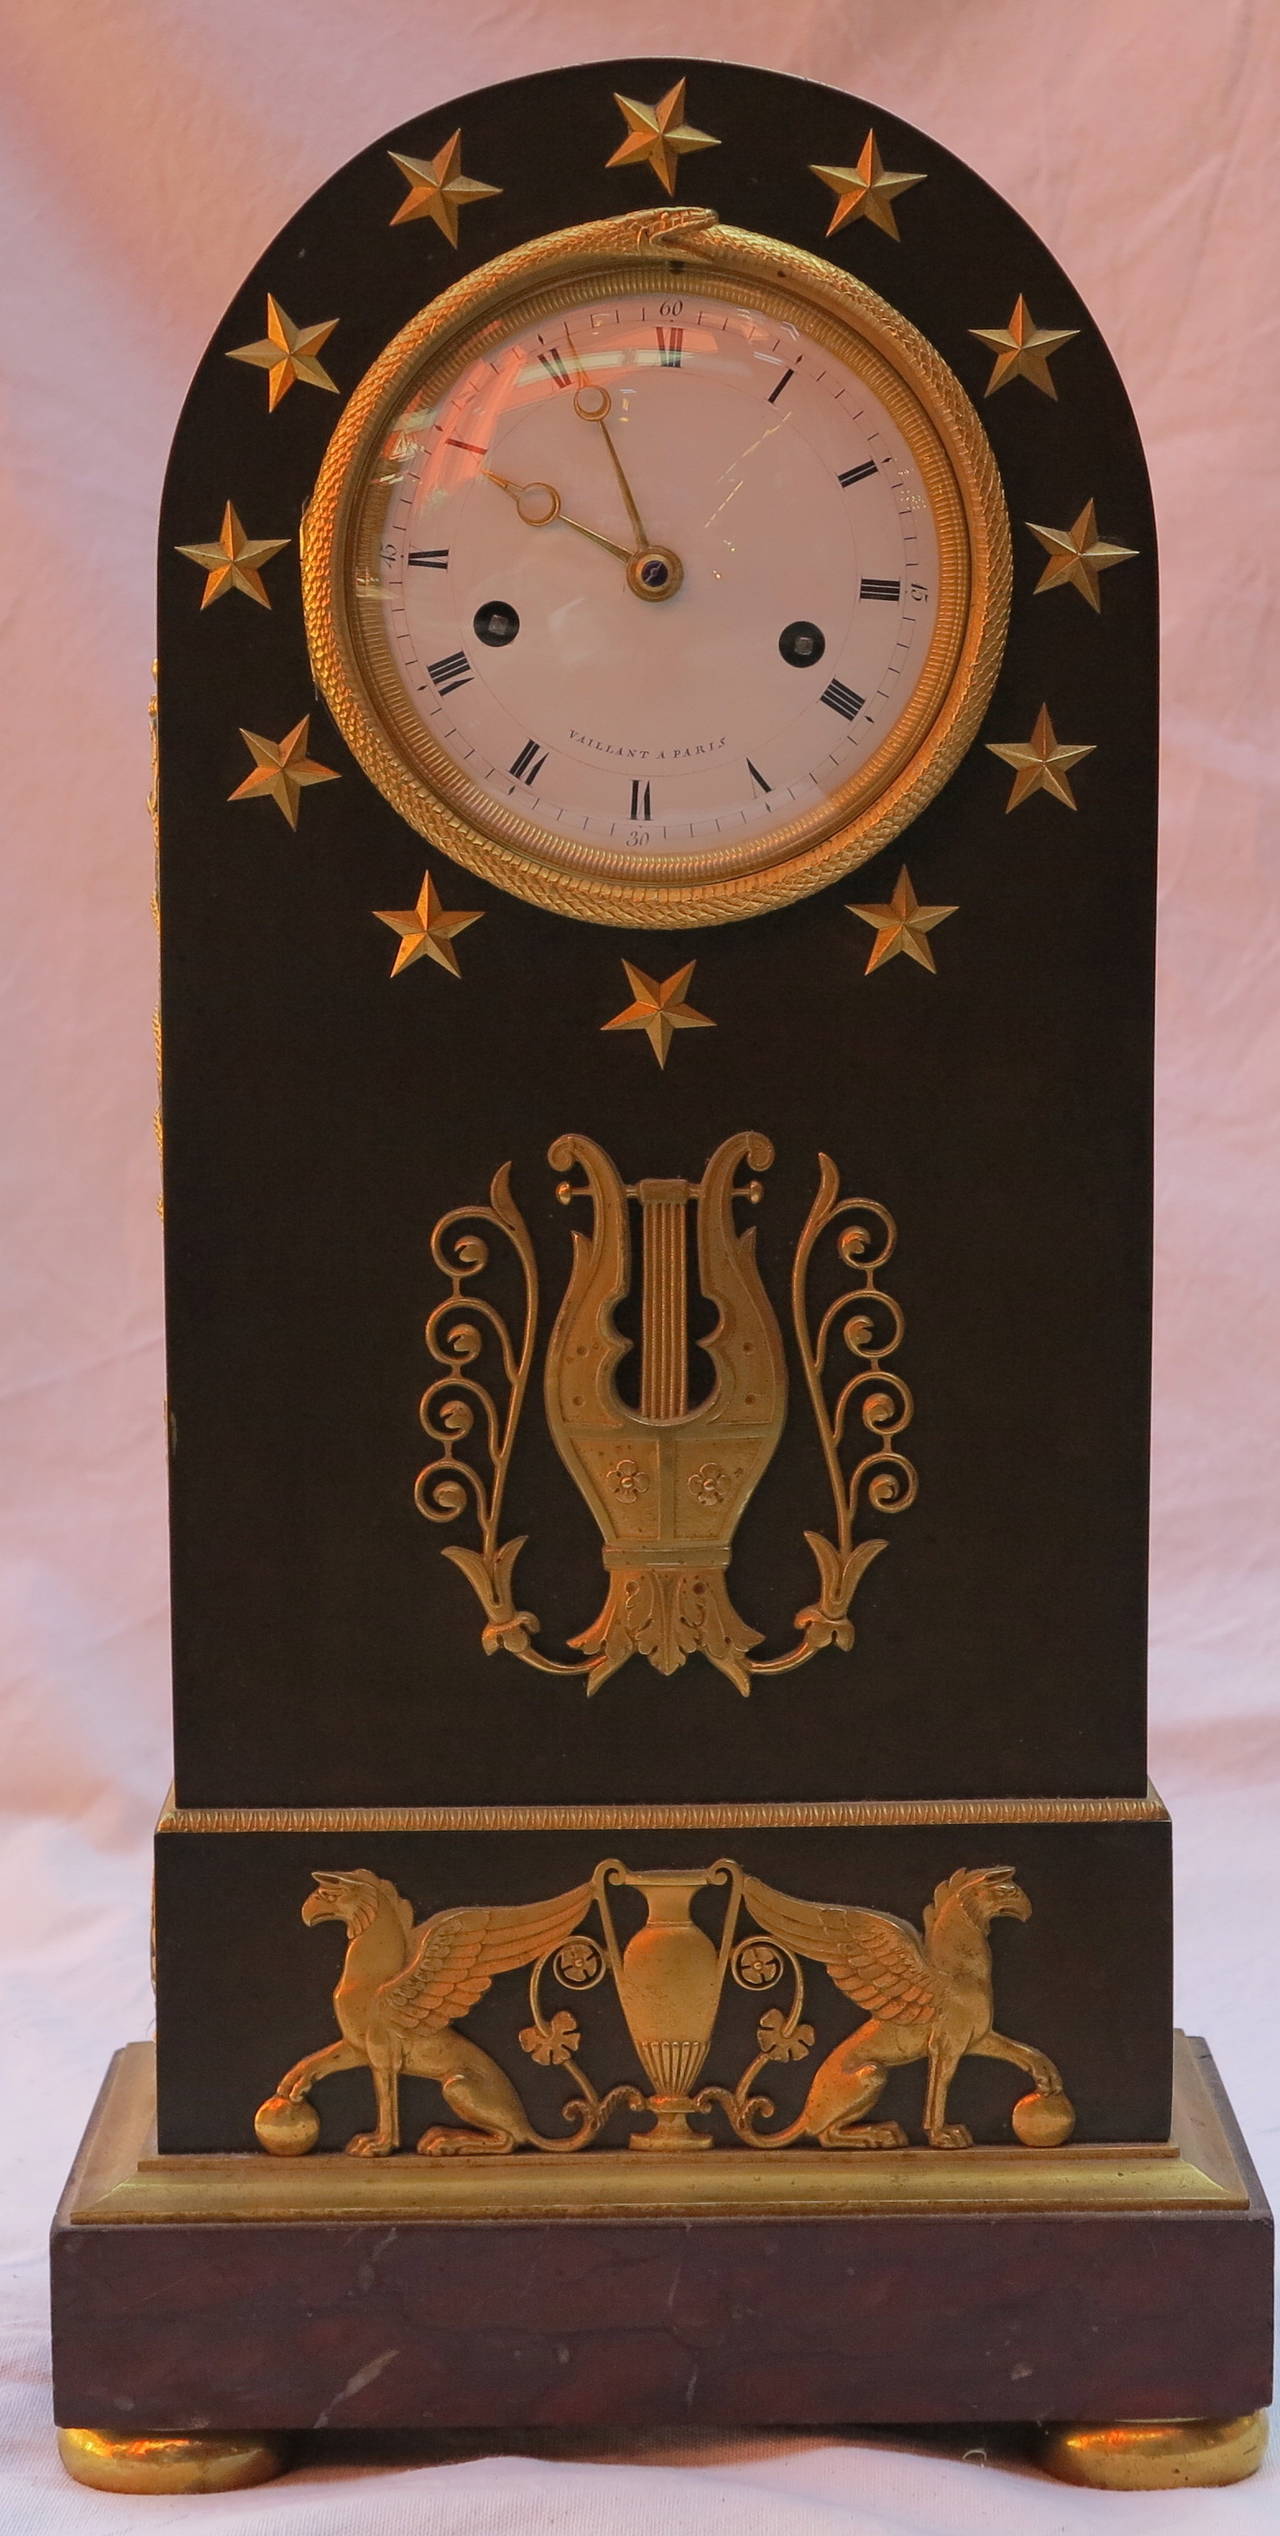 Fin du XVIIIe siècle Le répertoire des horloges d'époque 1795 avec Ouroboros en bronze bicolore a été réalisé en en vente